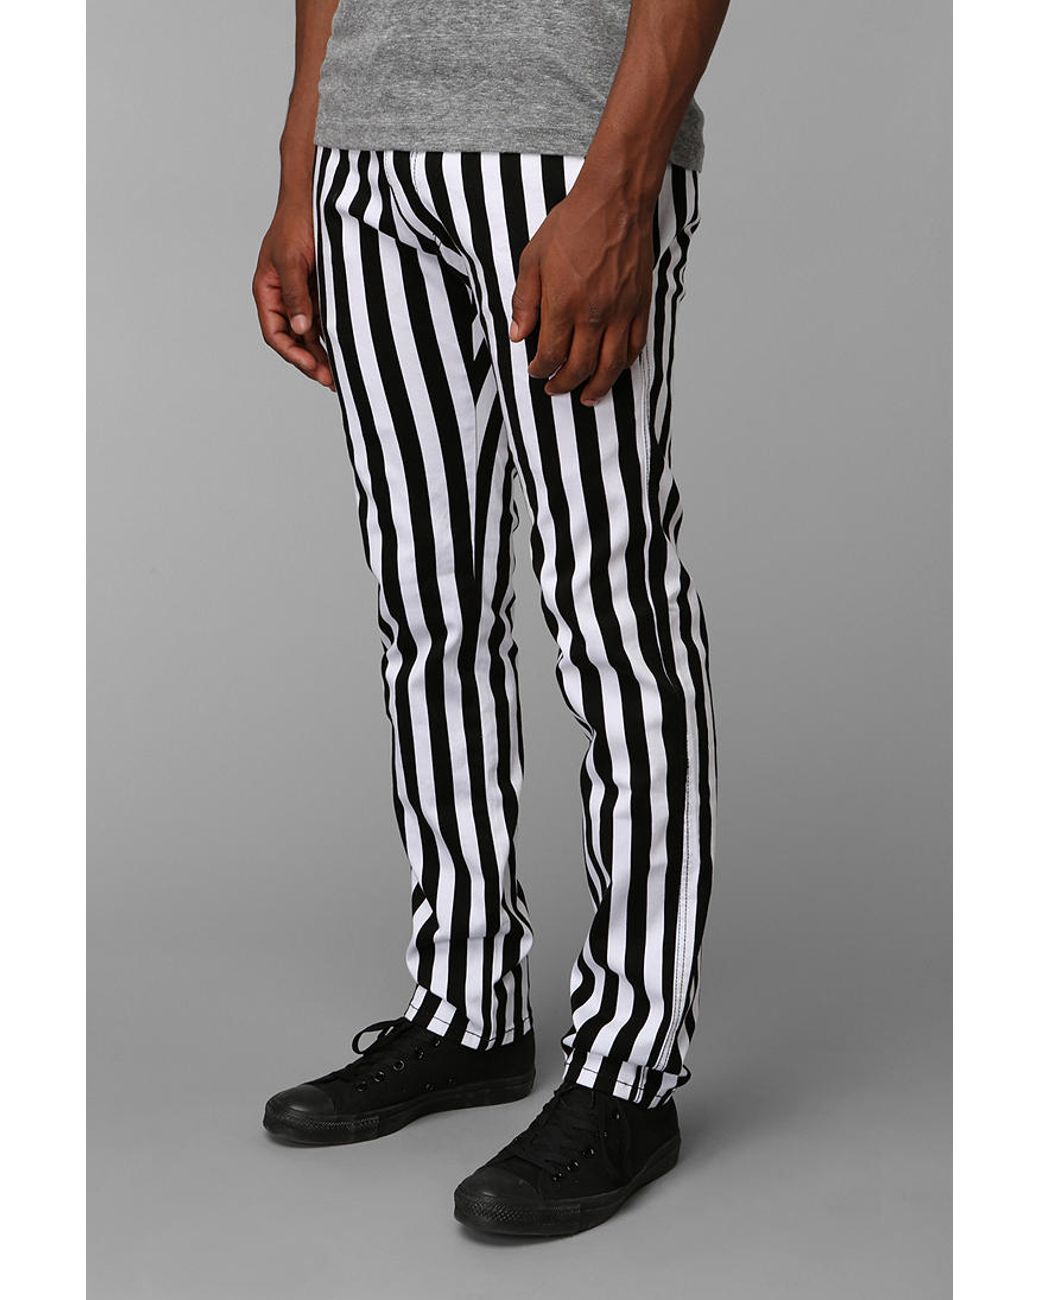 Robert Louis Black/White Striped Pants